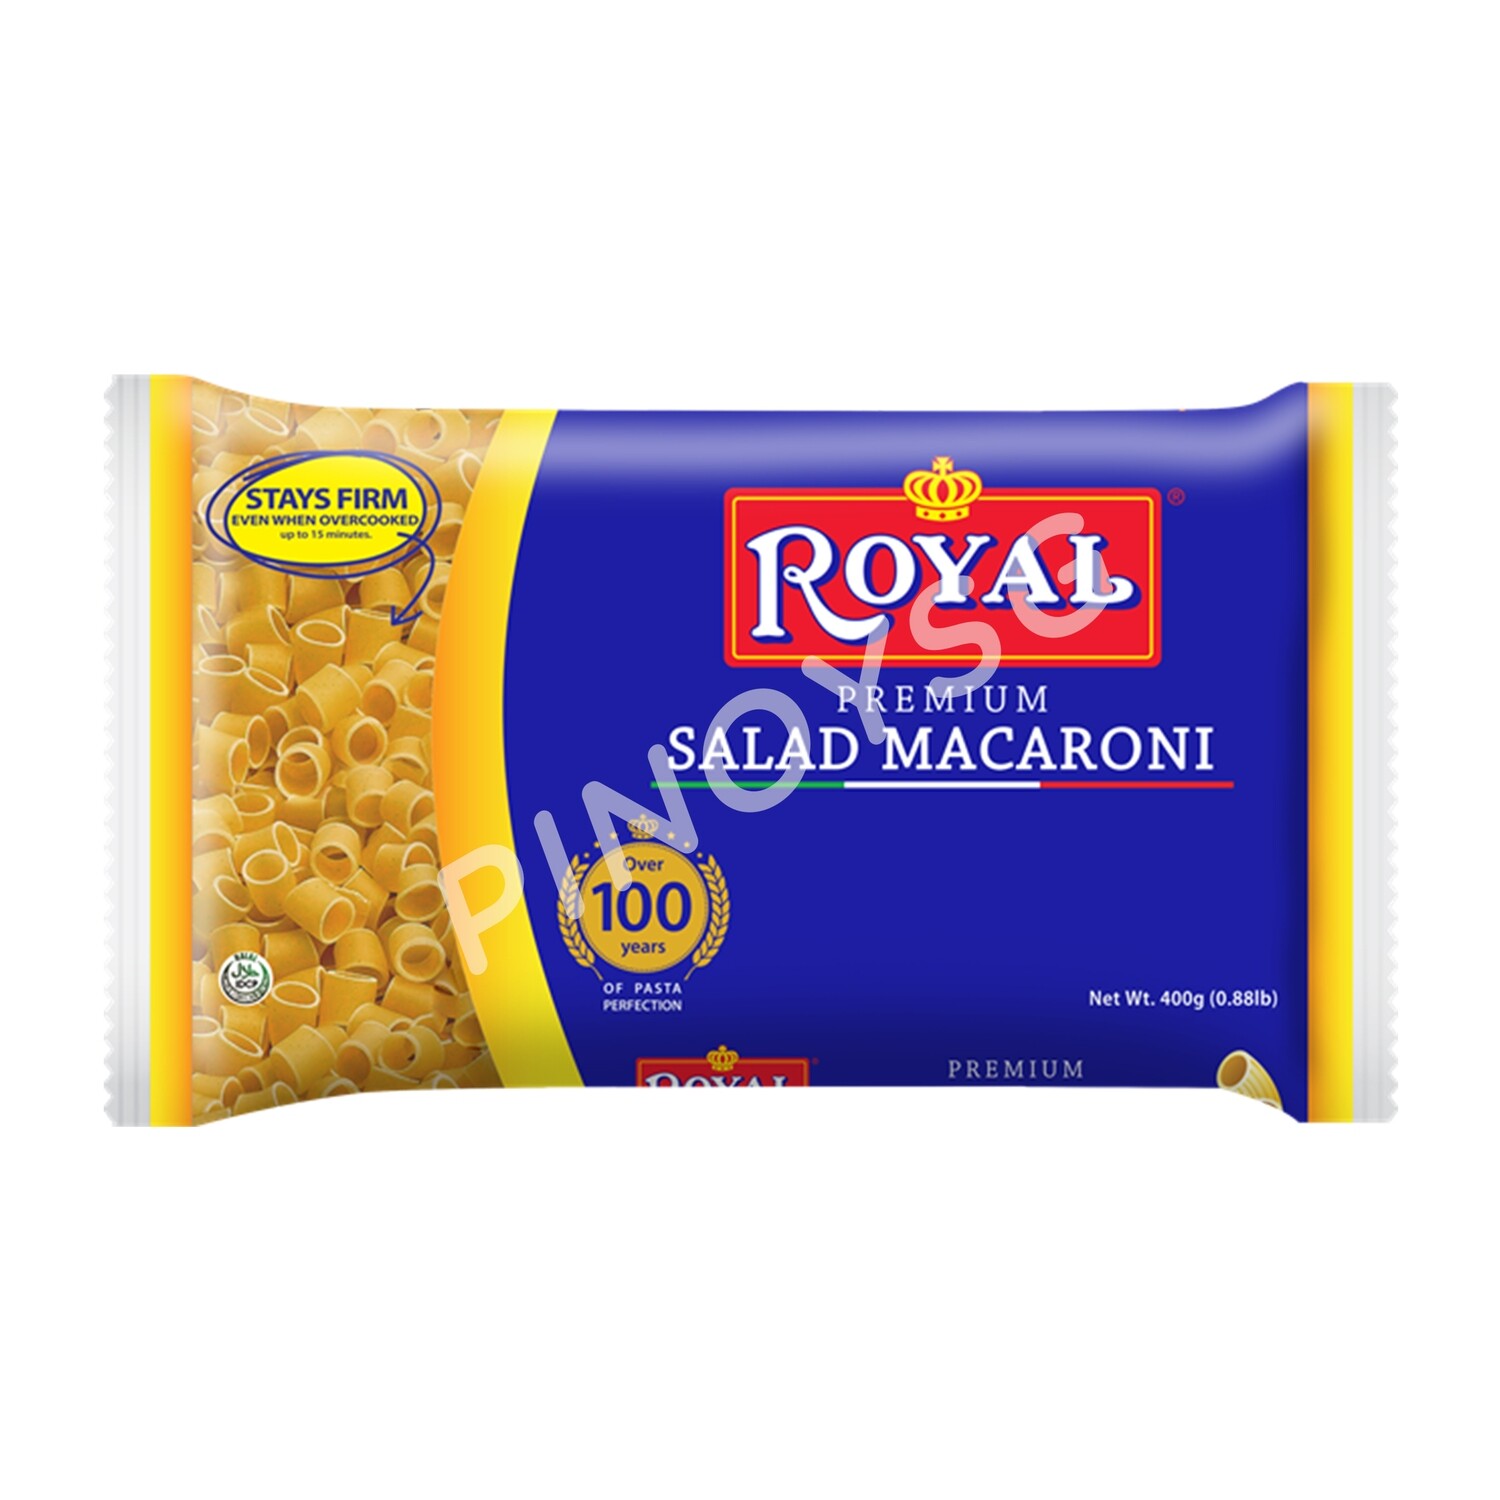 Royal Salad Macaroni 400g